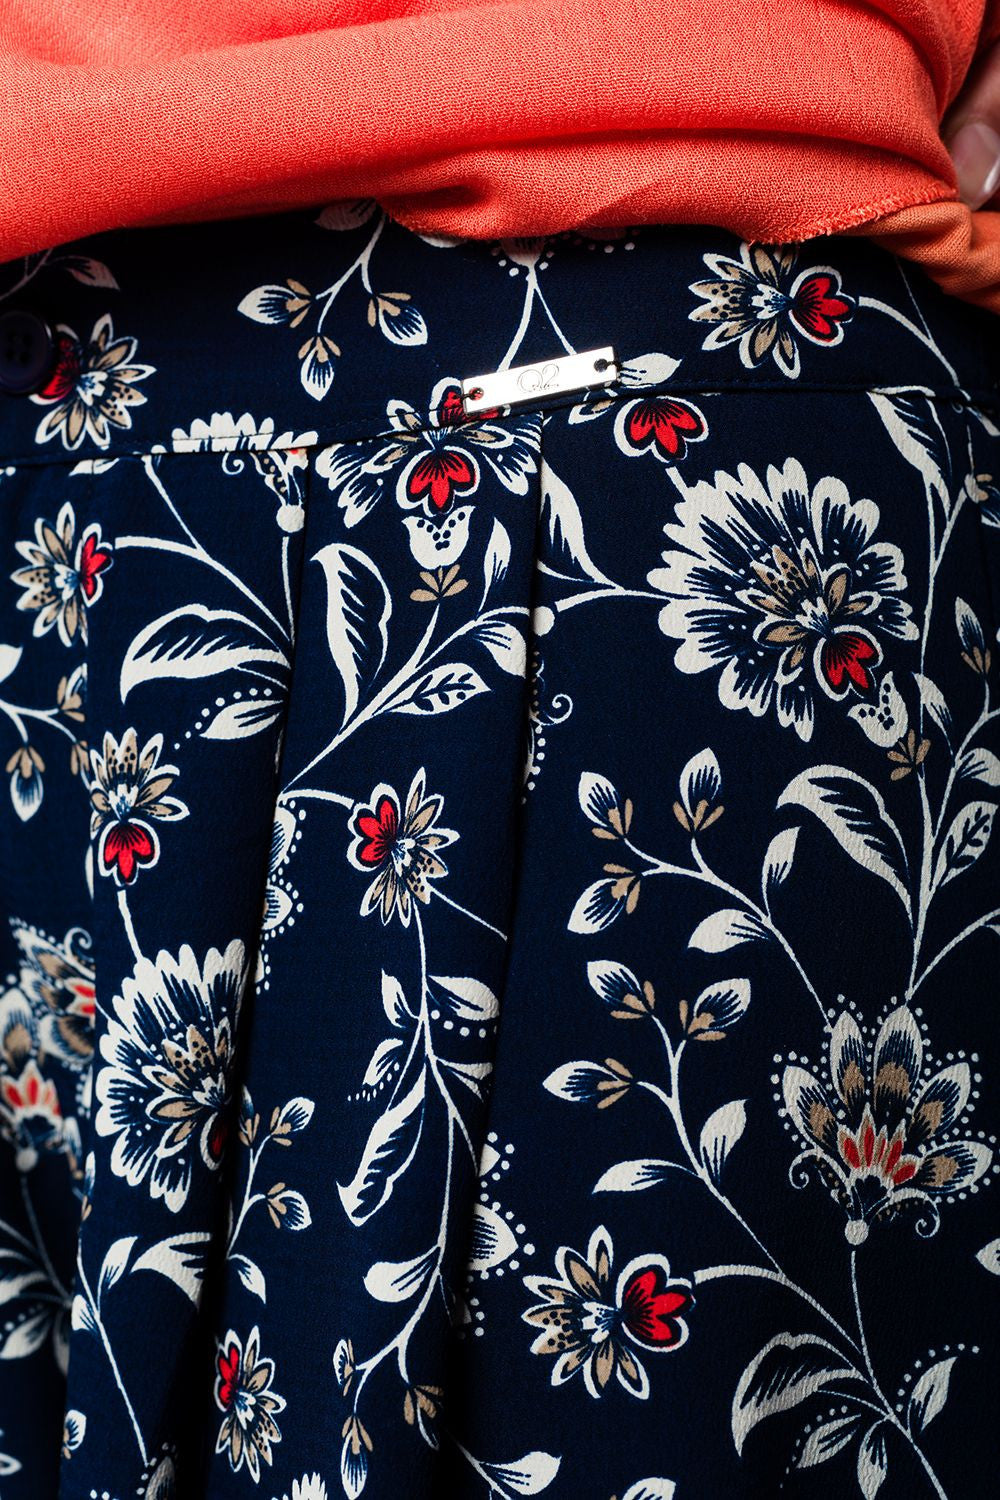 Pantalón-Falda  azul marino con estampado de flores